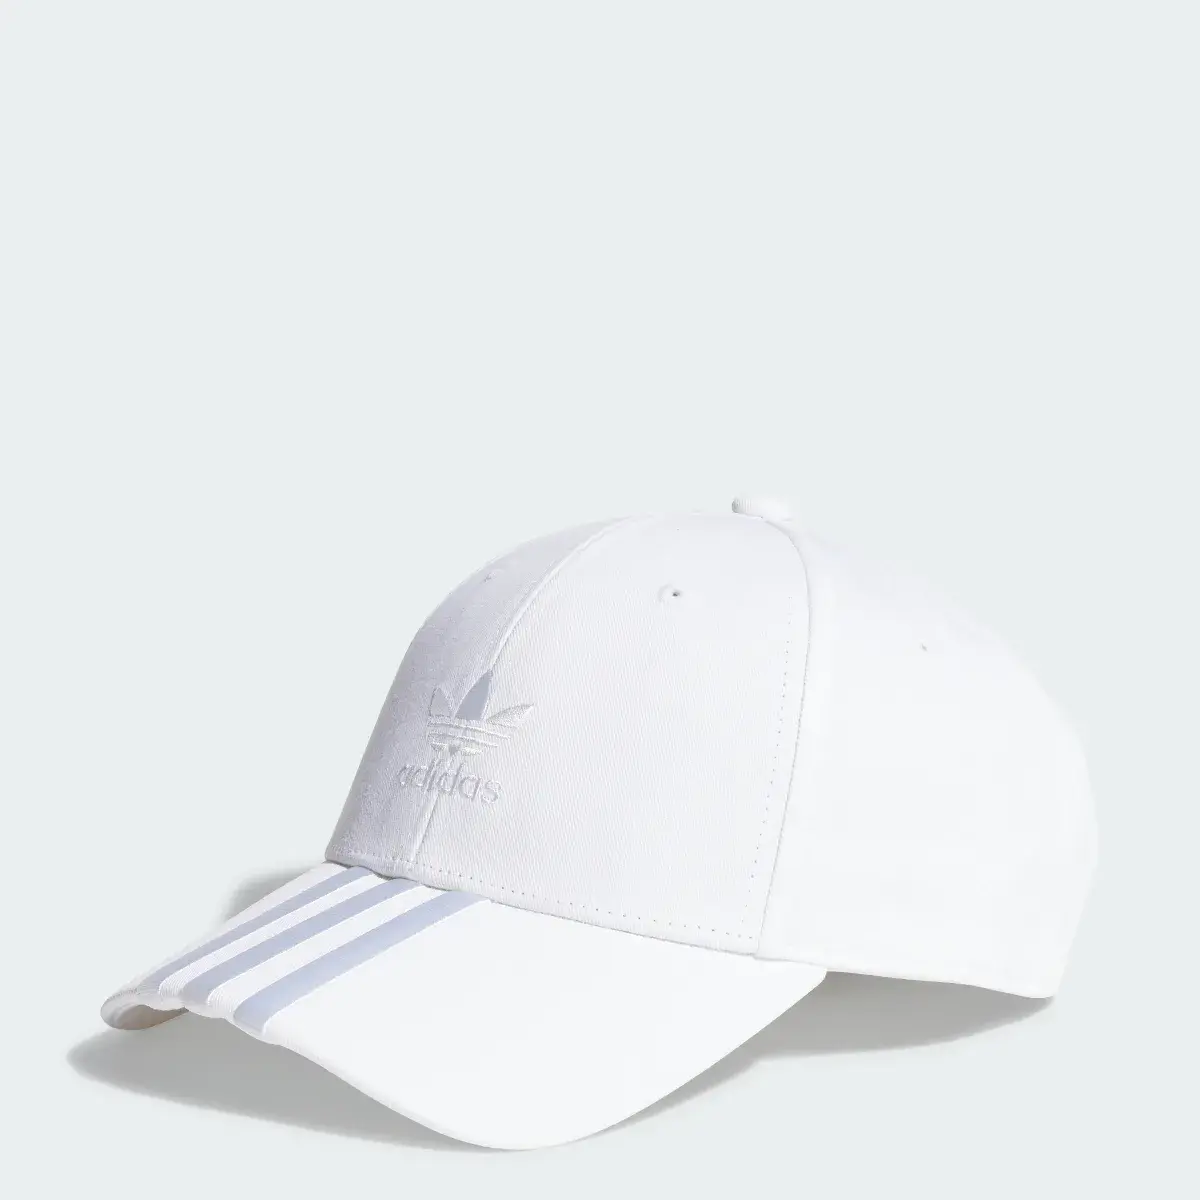 Adidas Cap. 1